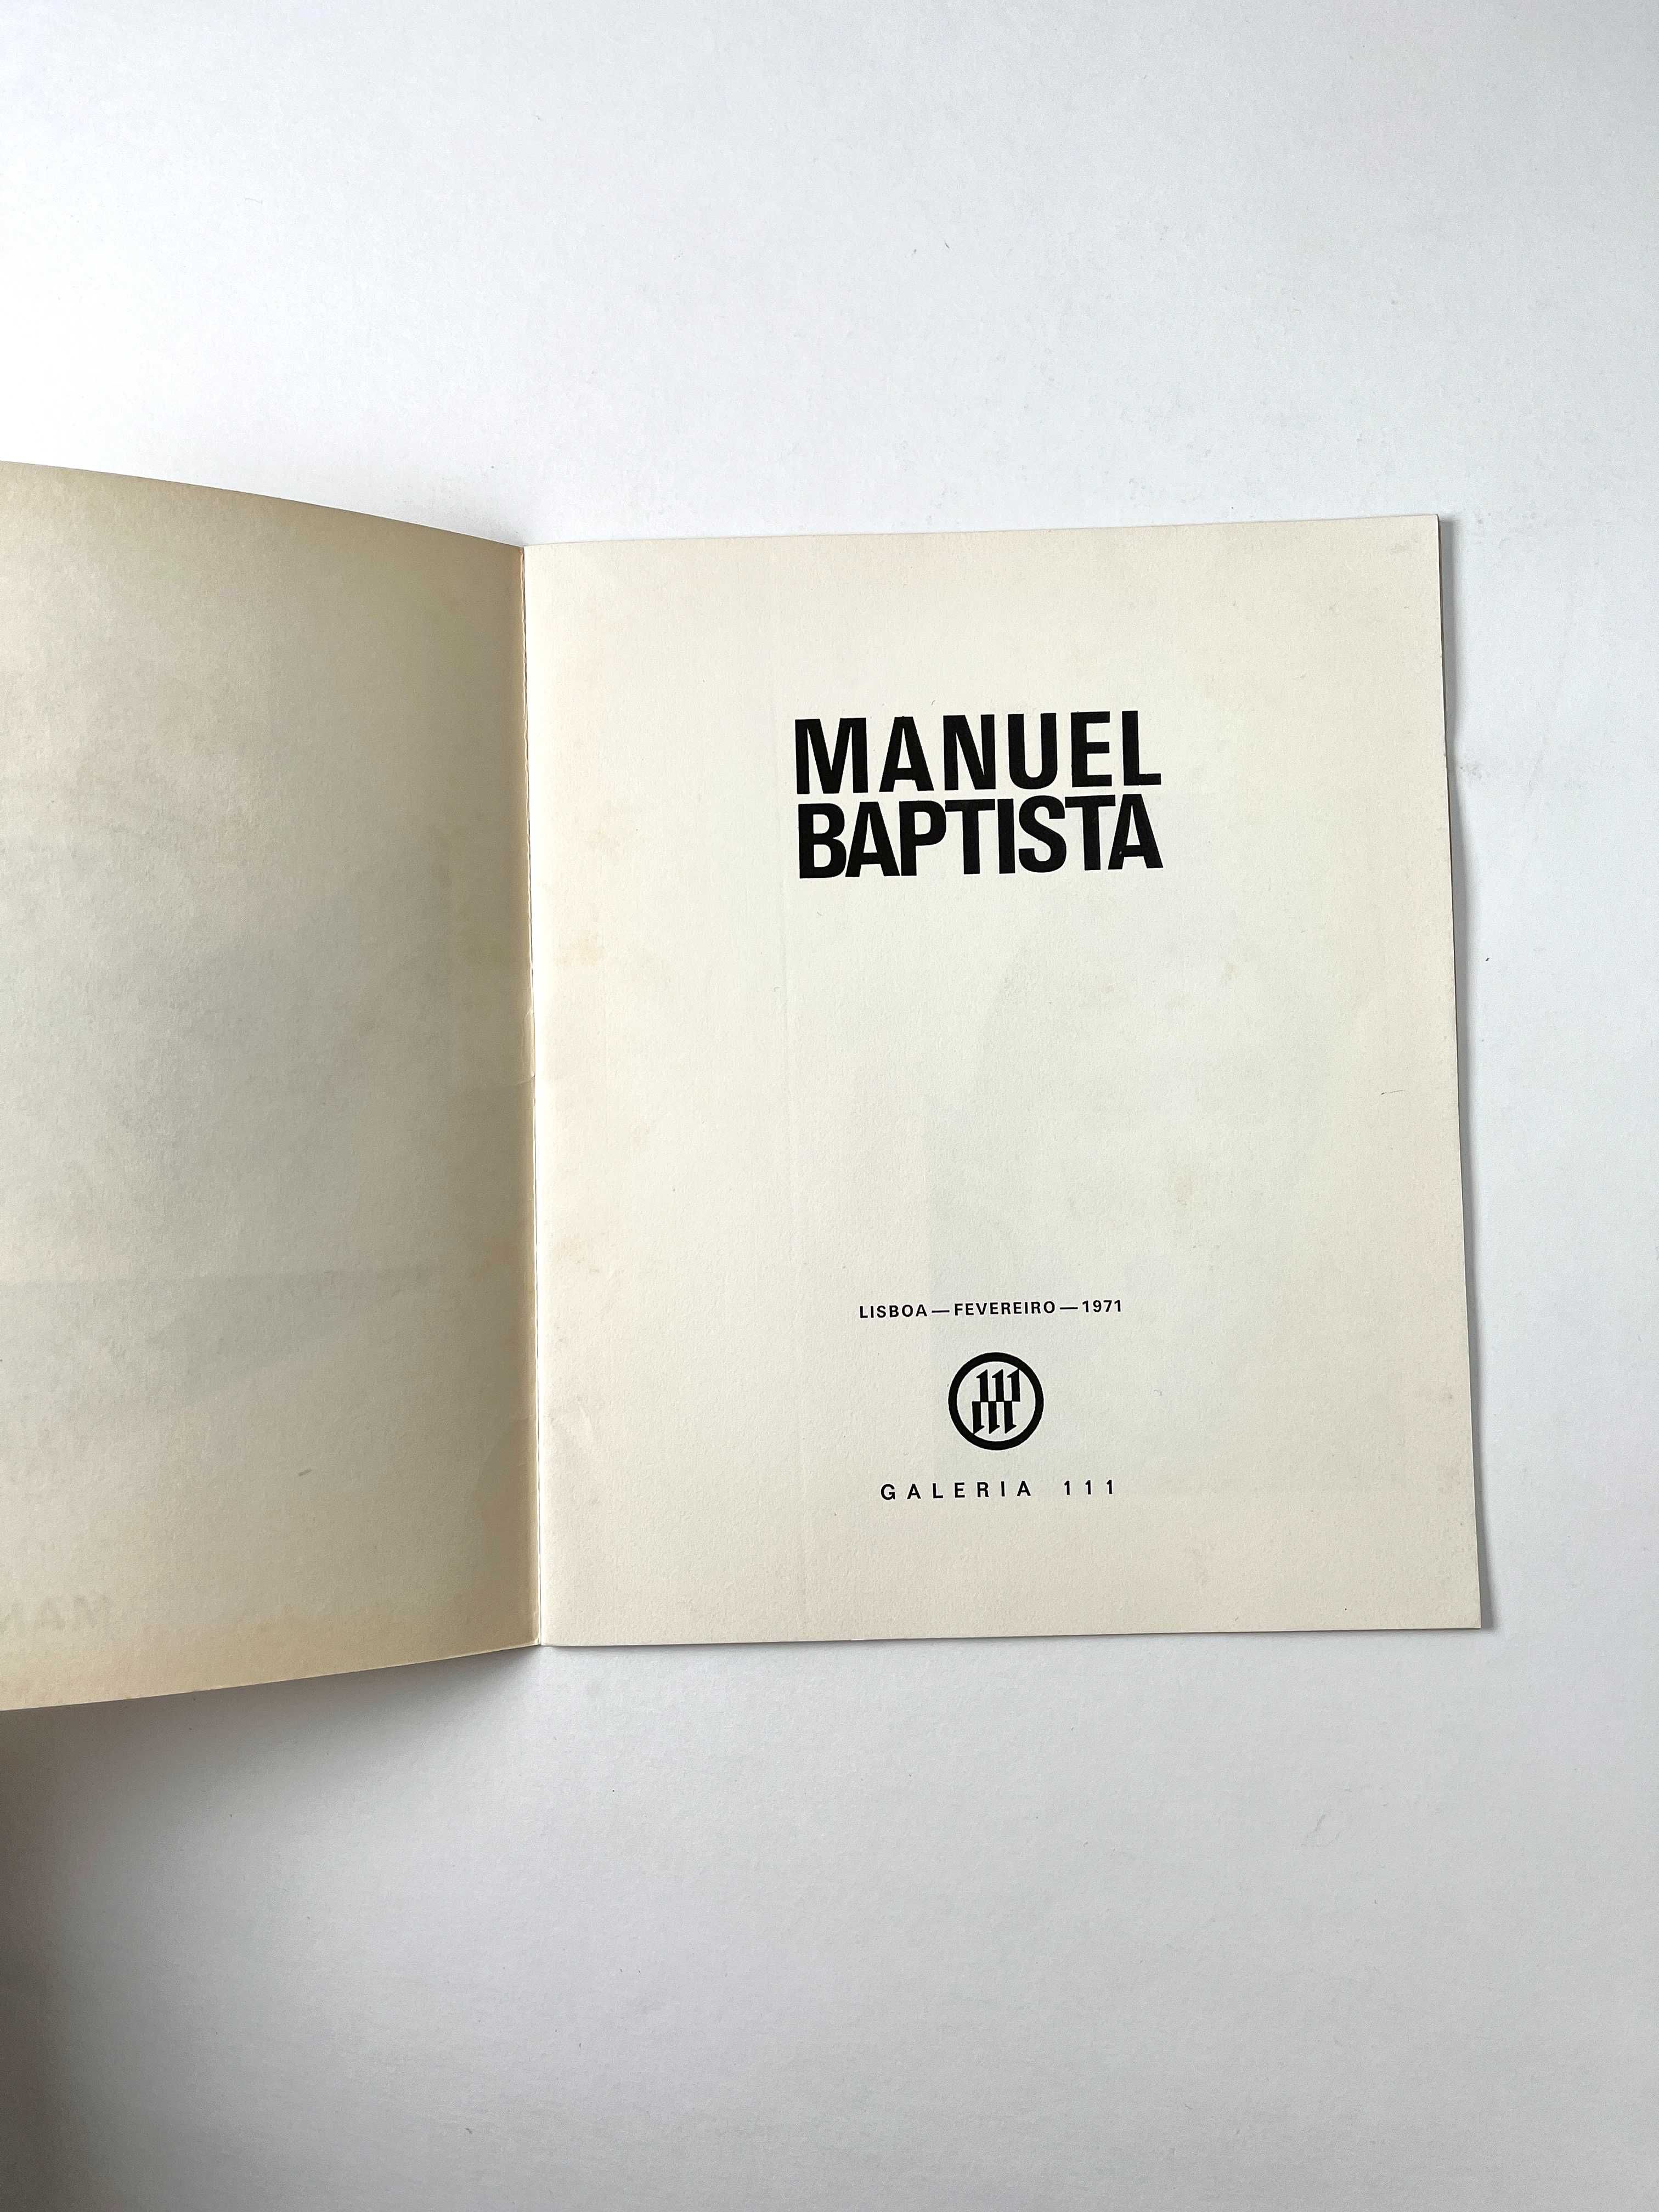 Manuel Baptista na Galeria 111 de 1971 Catálogo de exposição